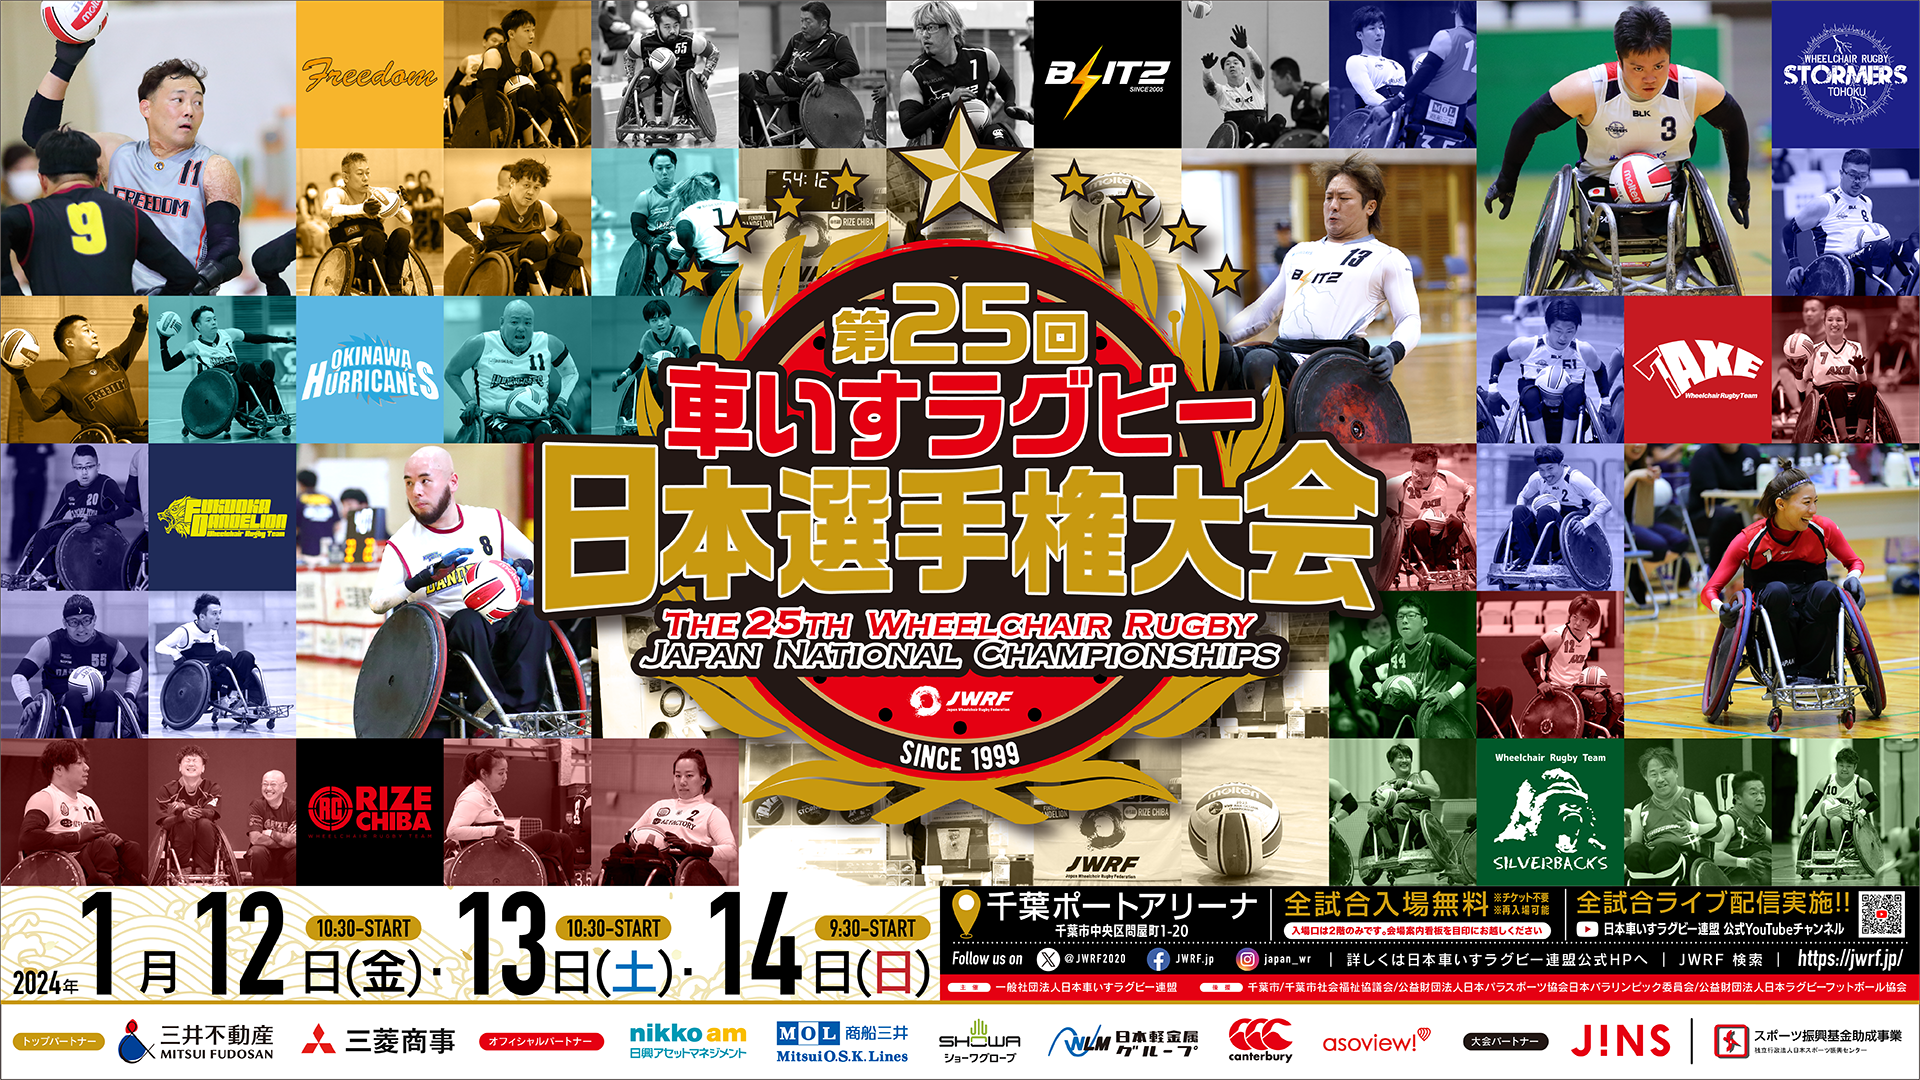 「第25回車いすラグビー日本選手権大会」開催のお知らせ